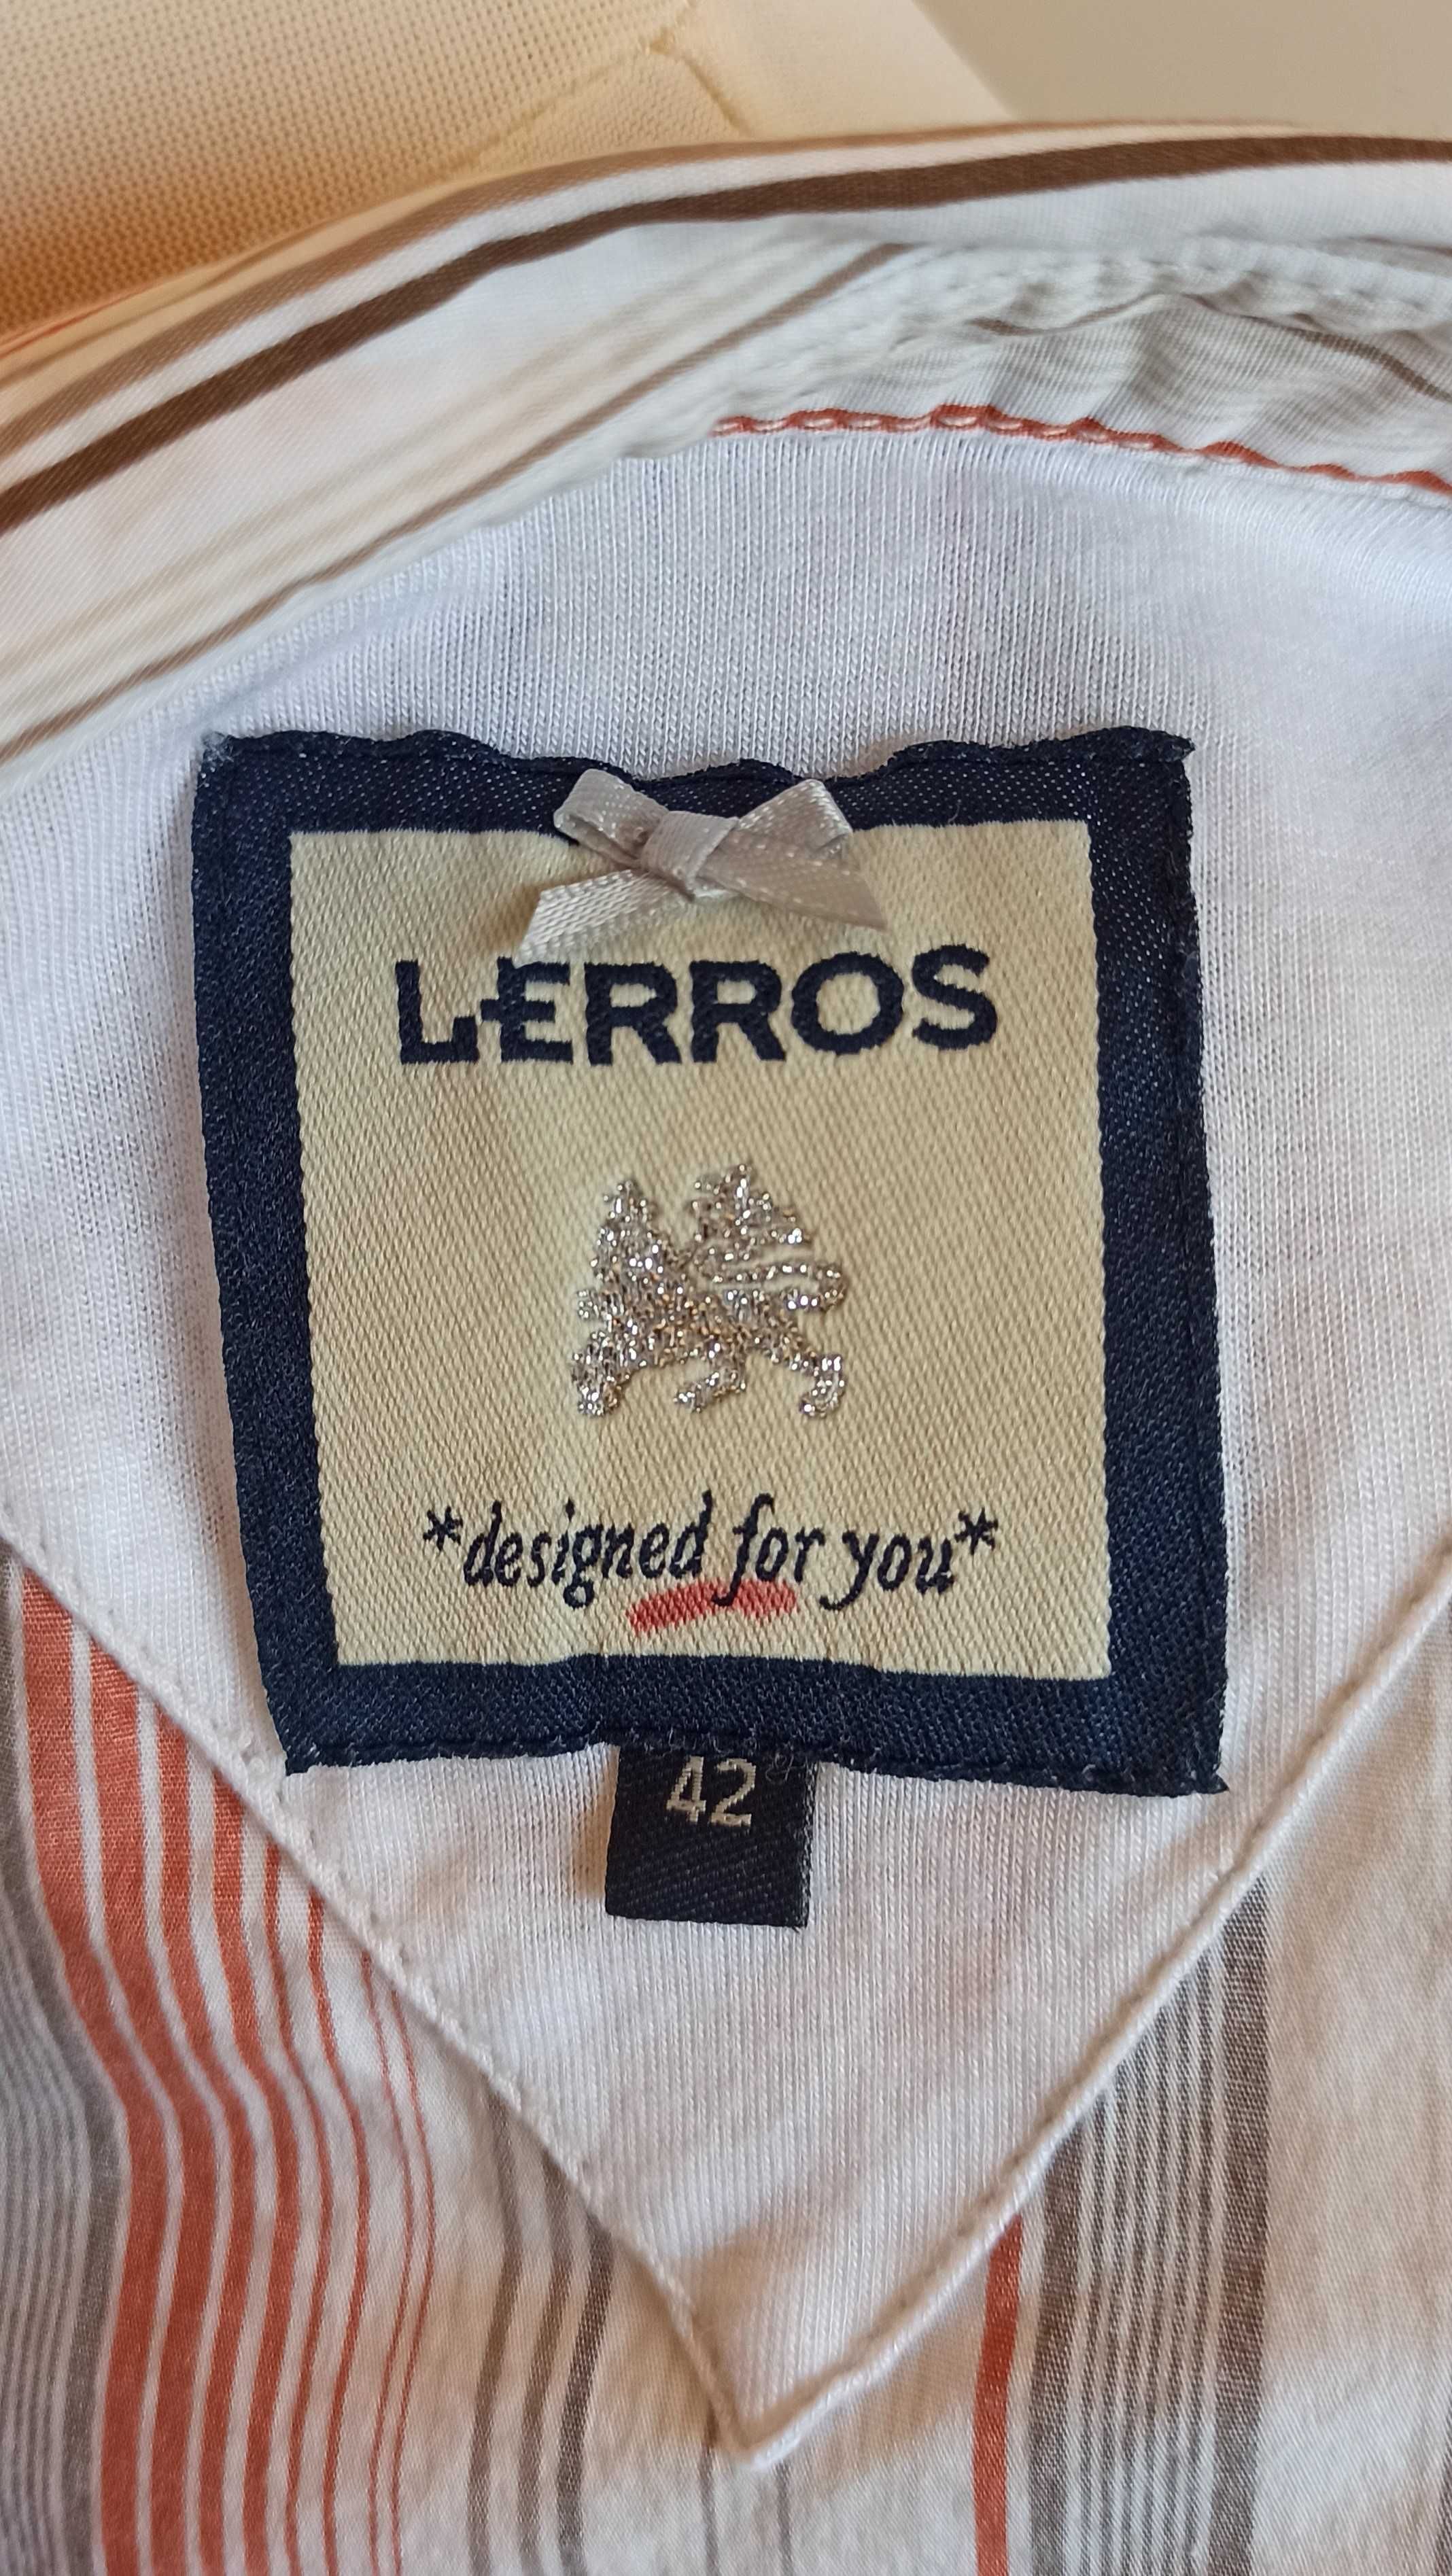 Lerros damska taliowana koszula paski kołnierzyk logo haft bawełna 42